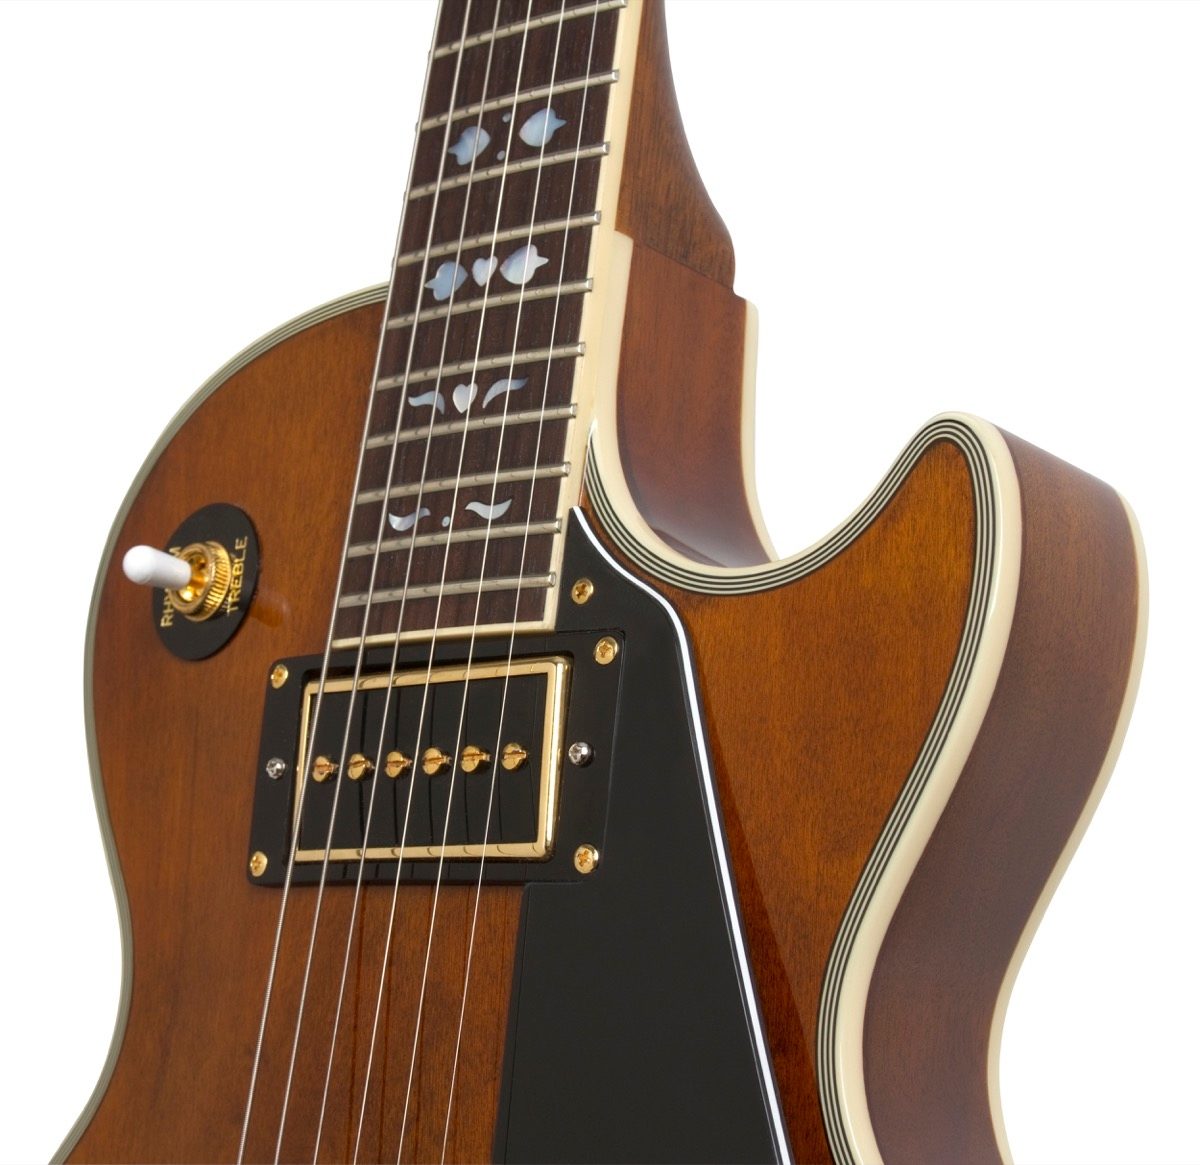 Epiphone Limited Edition Lee Malia Les Paul Custom Guitar